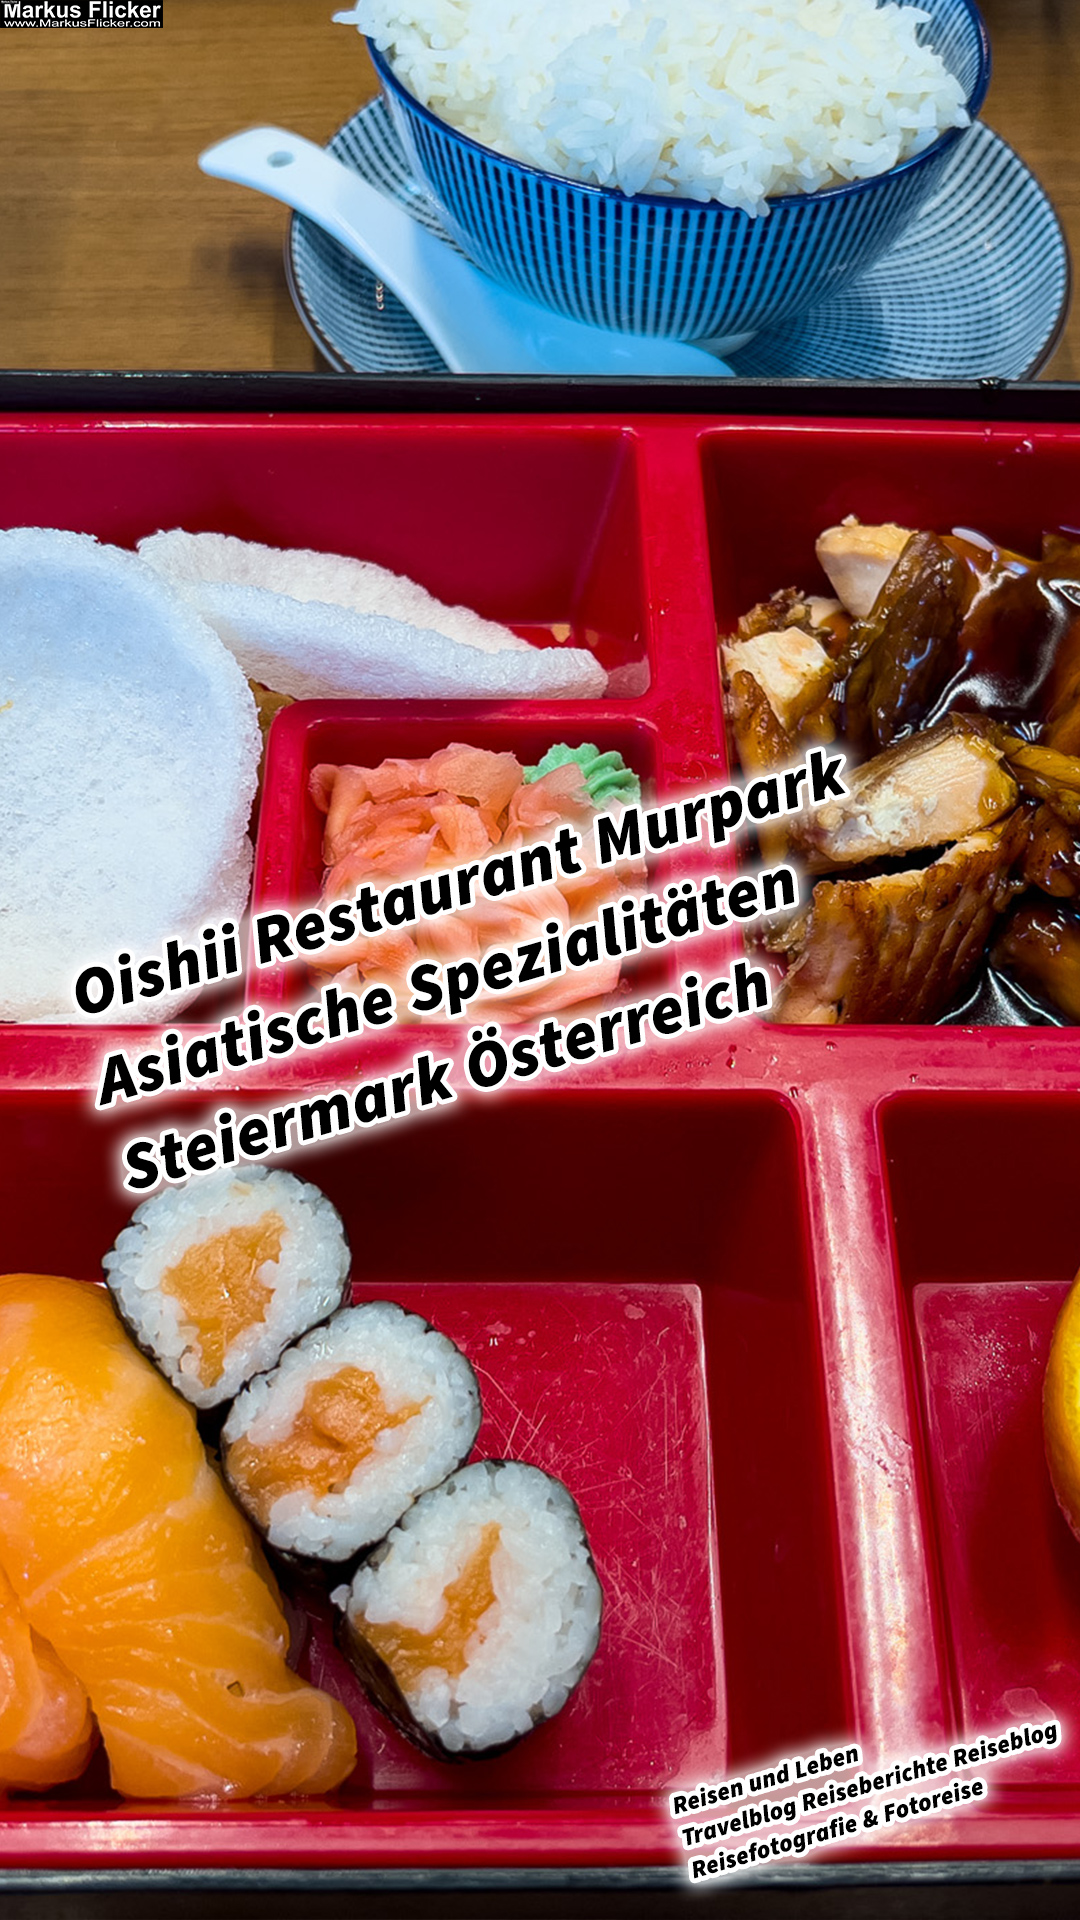 Oishii Restaurant Murpark Asiatische Spezialitäten Steiermark Österreich